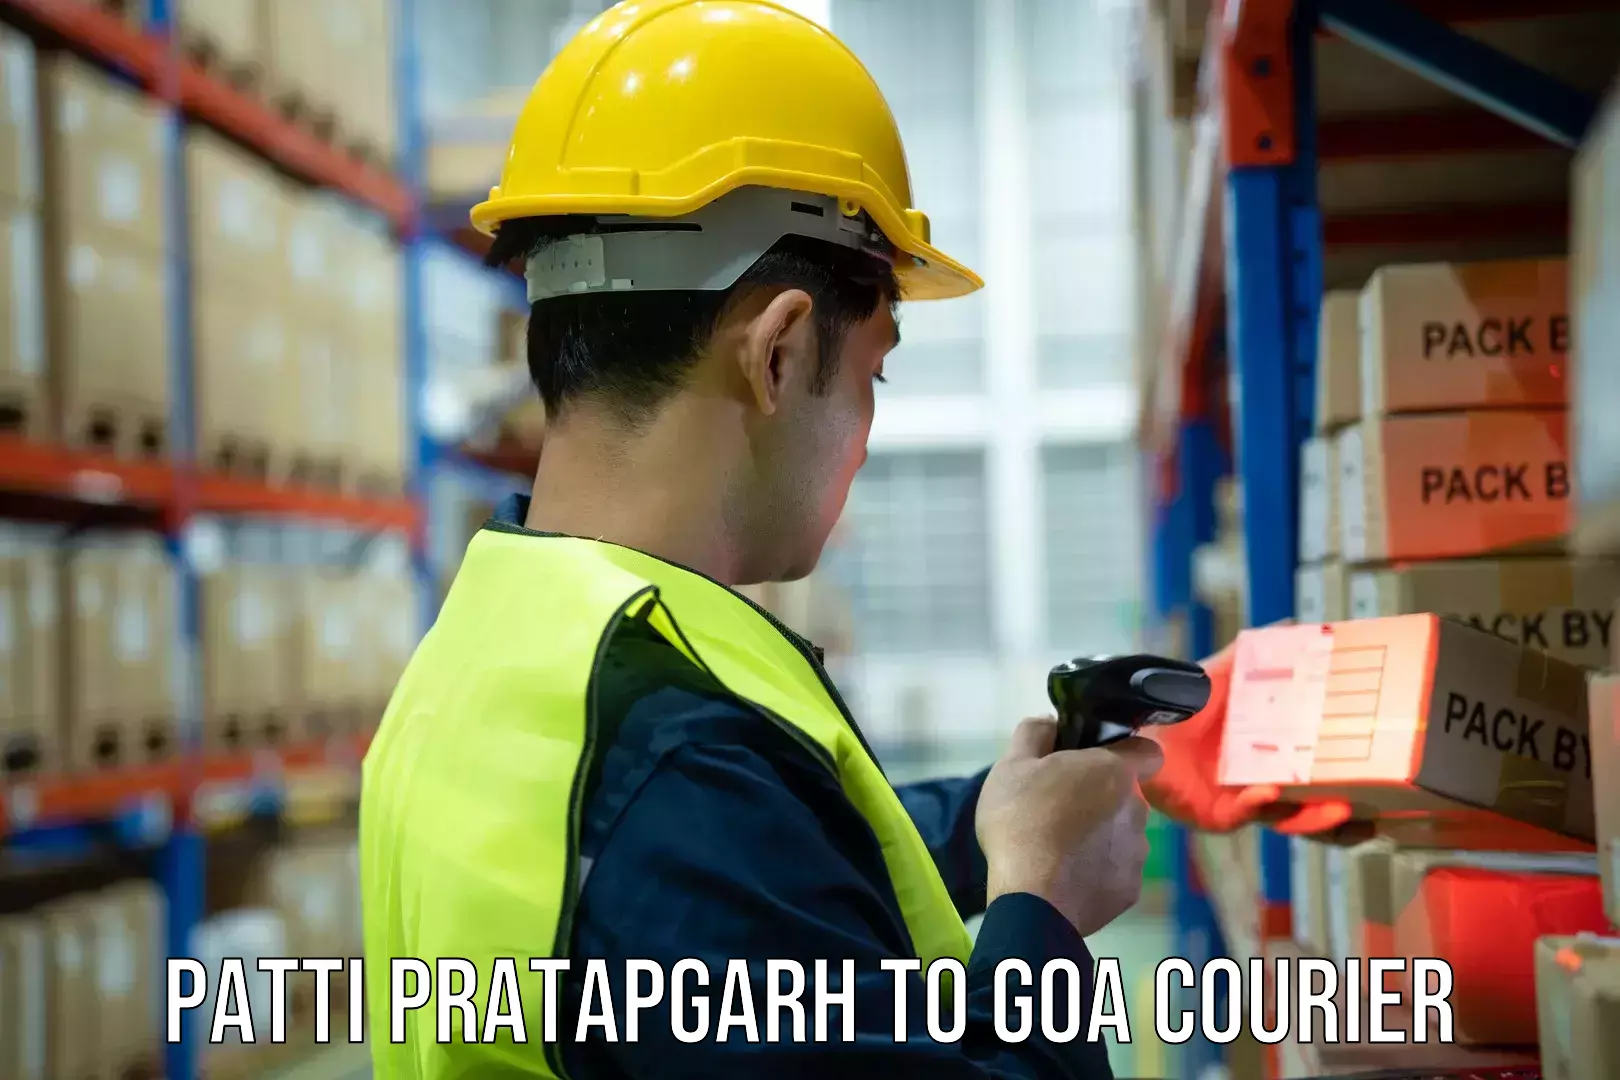 Courier app Patti Pratapgarh to Goa